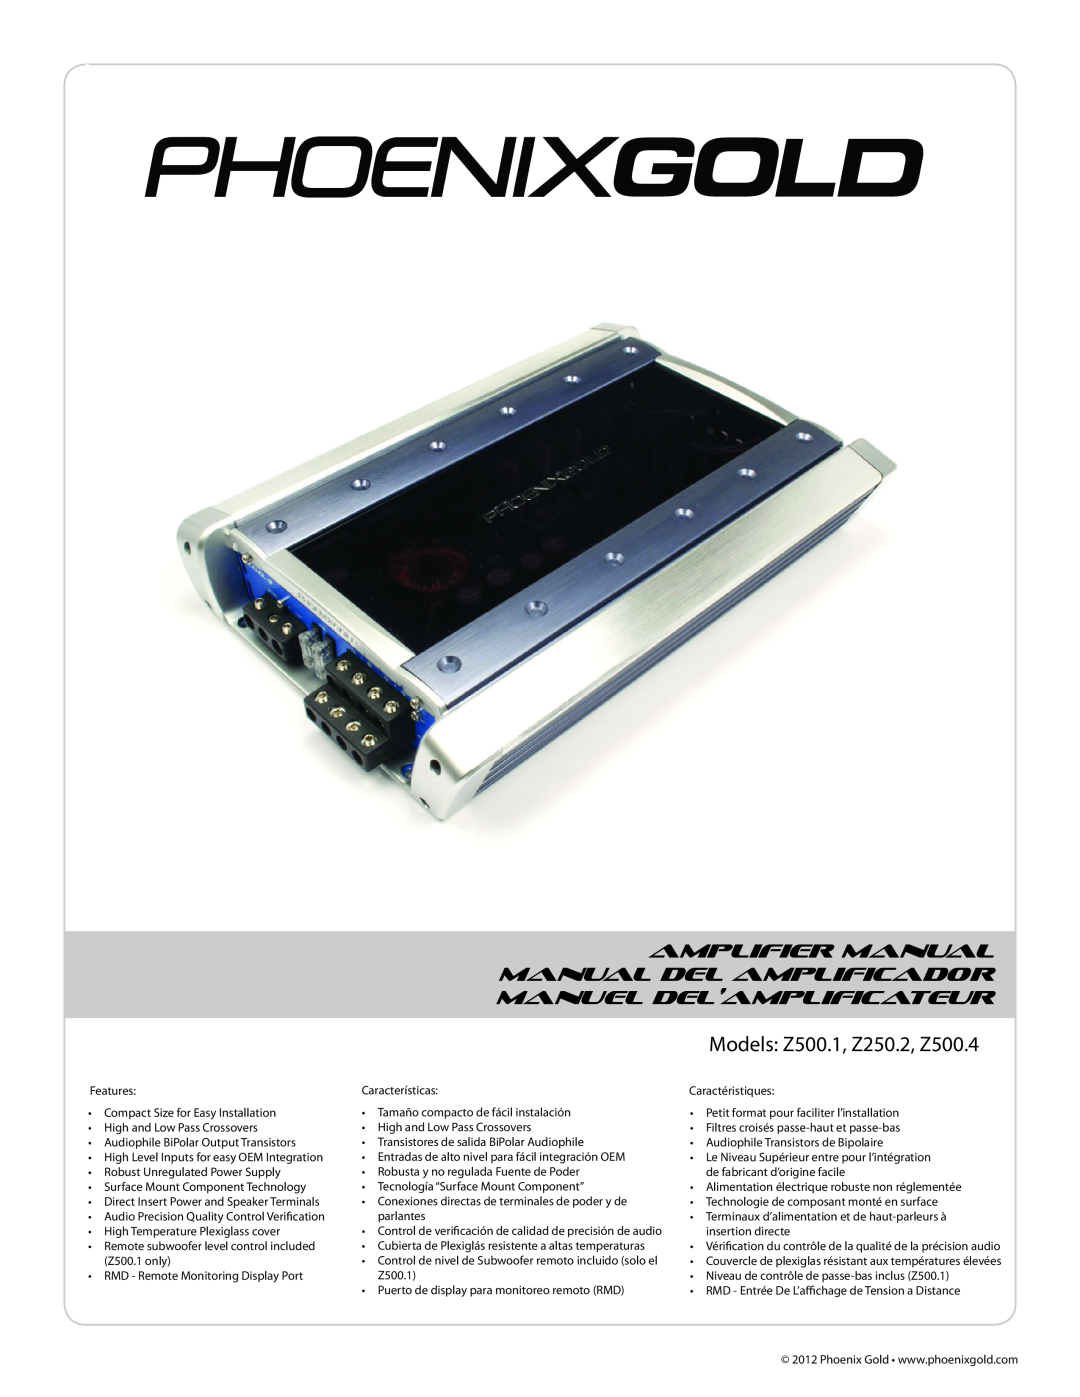 Phoenix Gold Z500.1, Z250.2, Z500.4 manual Amplifier Manual Manual Del Amplificador, Manuel Del’Amplificateur 